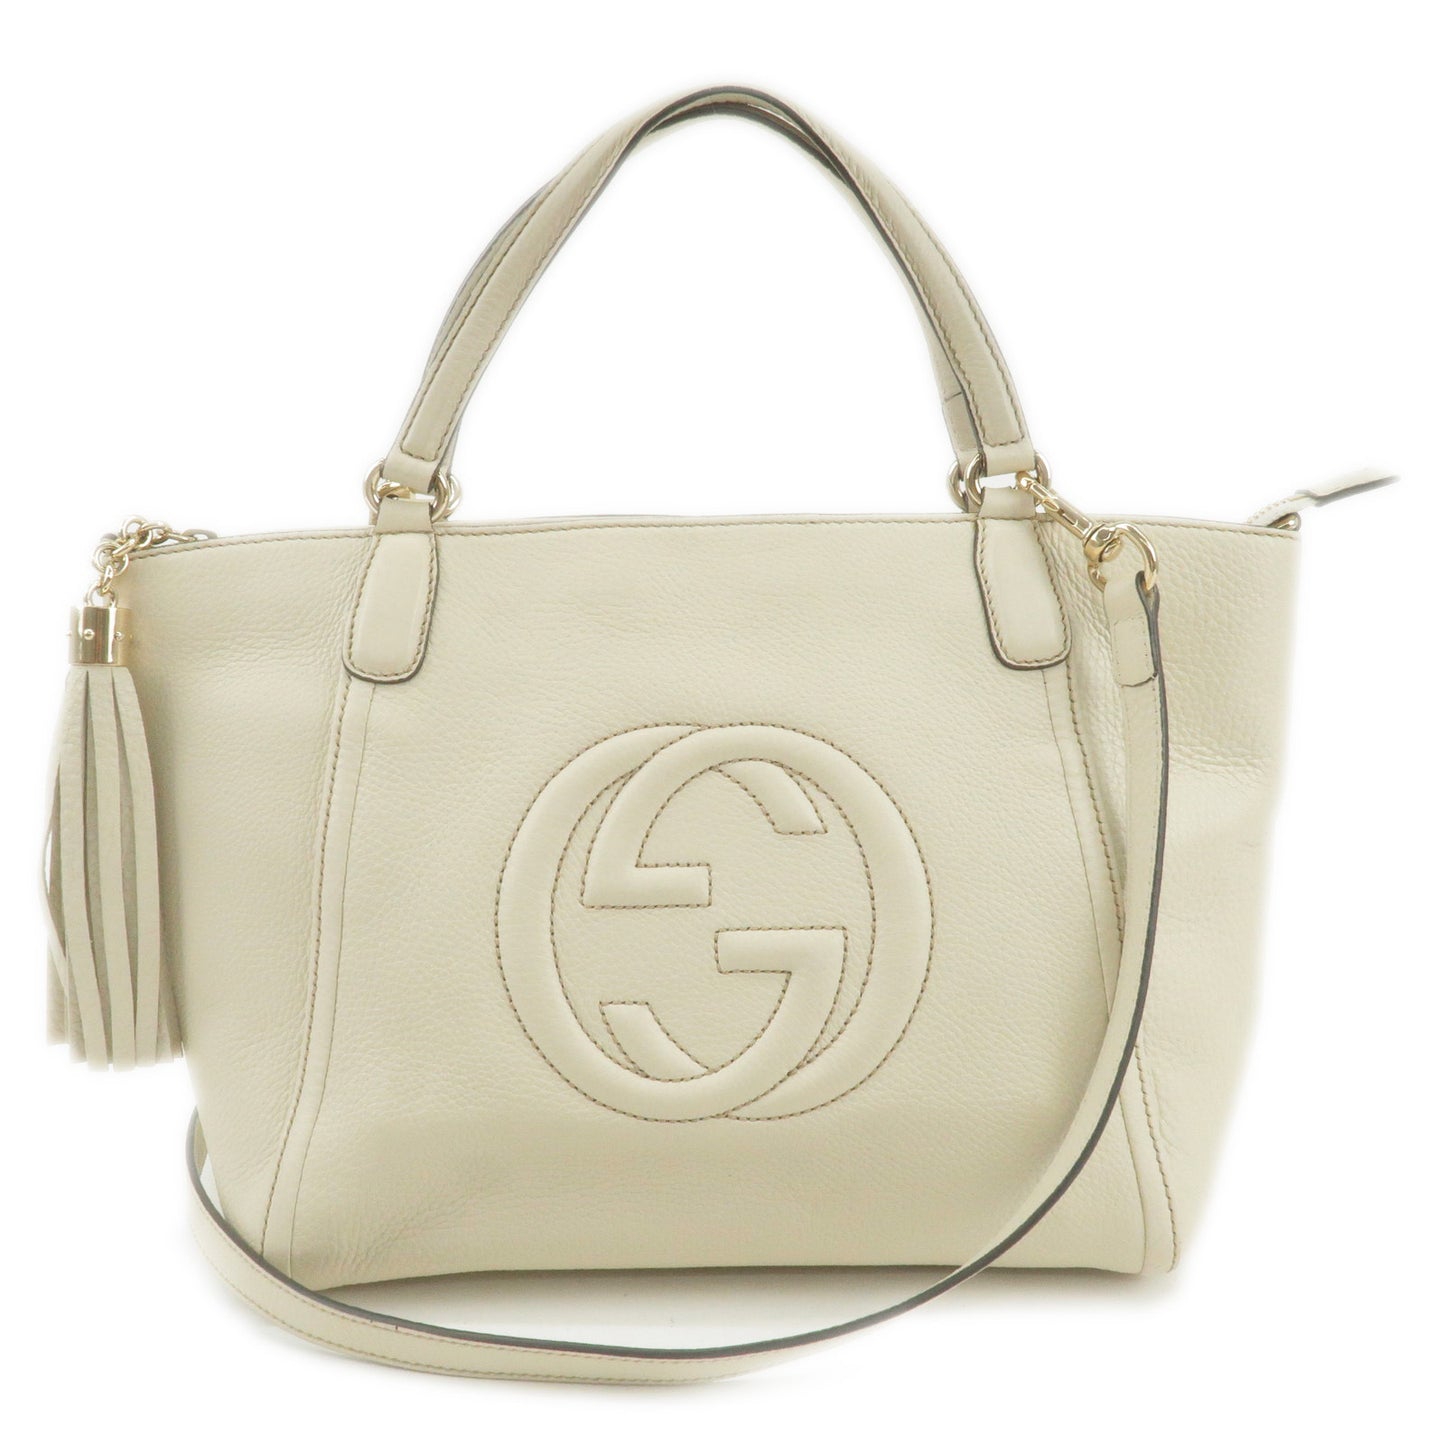 GUCCI-SOHO-Leather-2-Way-Hand-Bag-Shoulder-Bag-Ivory-369176